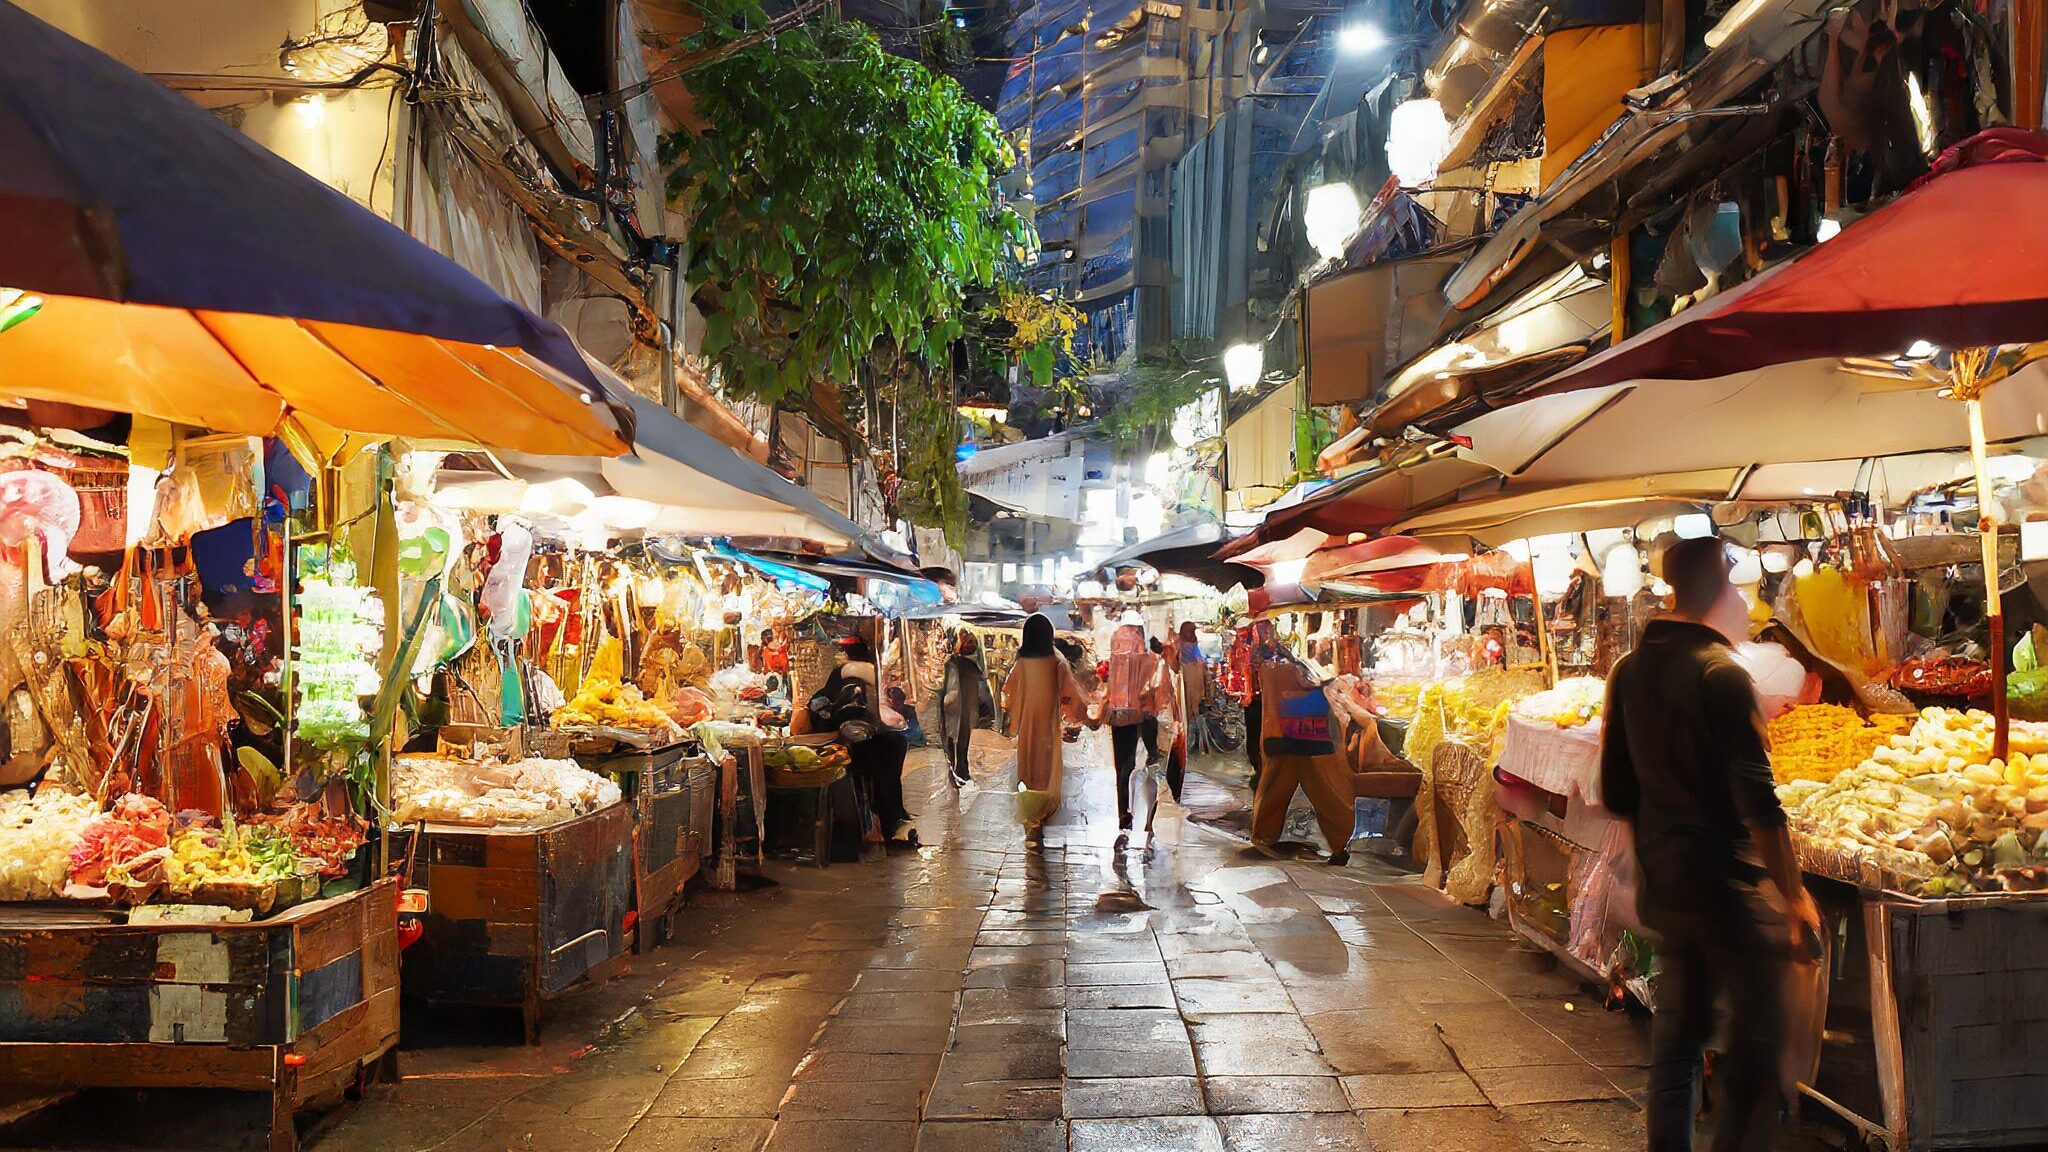 Alt: Mercado Lugar lleno de contrastes, puestos de comida y souvenirs del mercado de Bangkok en una noche lluviosa.